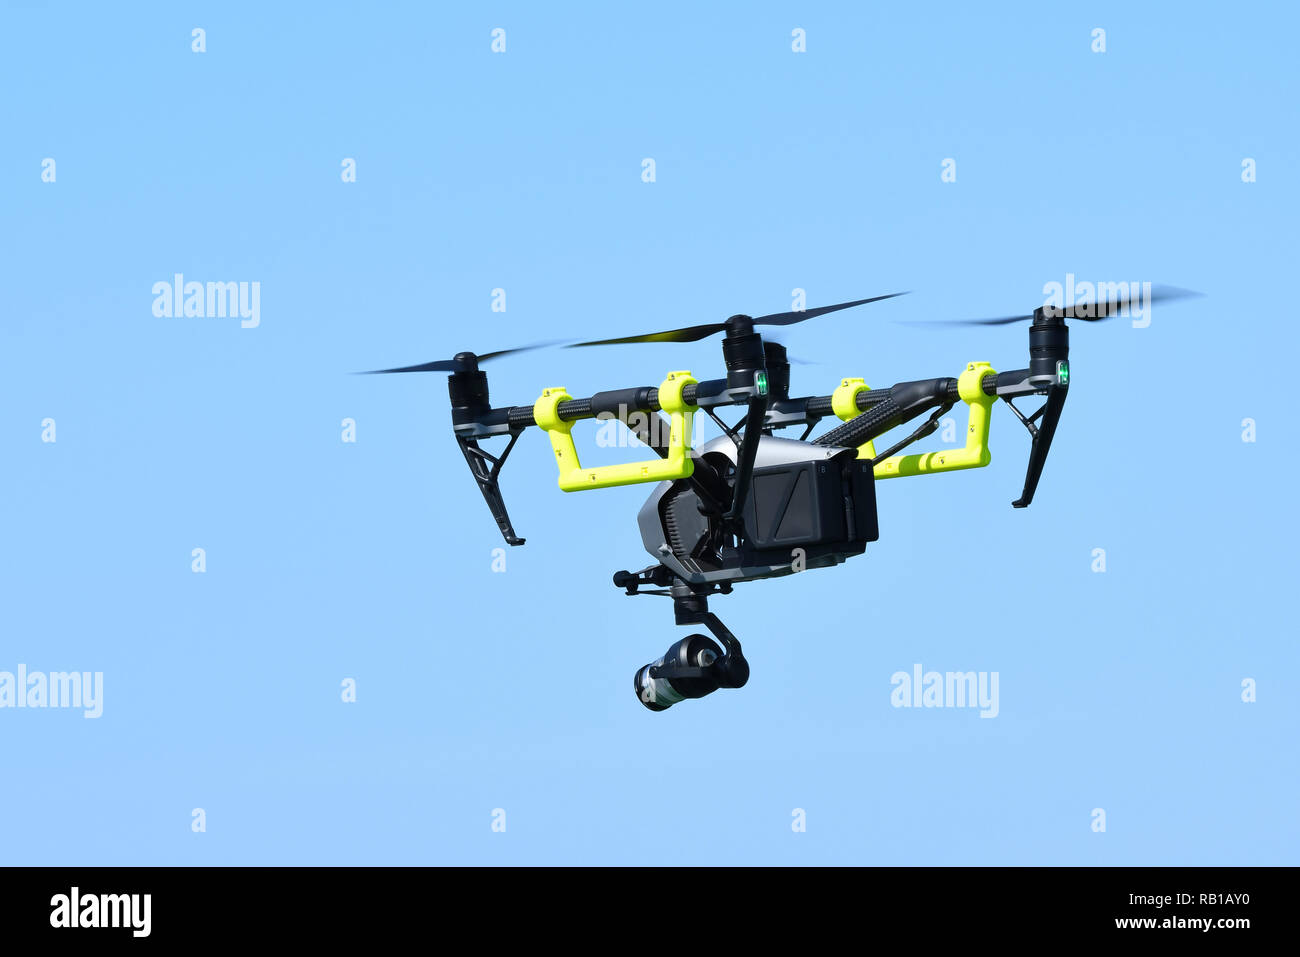 DJI Quadcopter 2 inspirer, d'un drone équipé d'une caméra vidéo dans le ciel. Banque D'Images